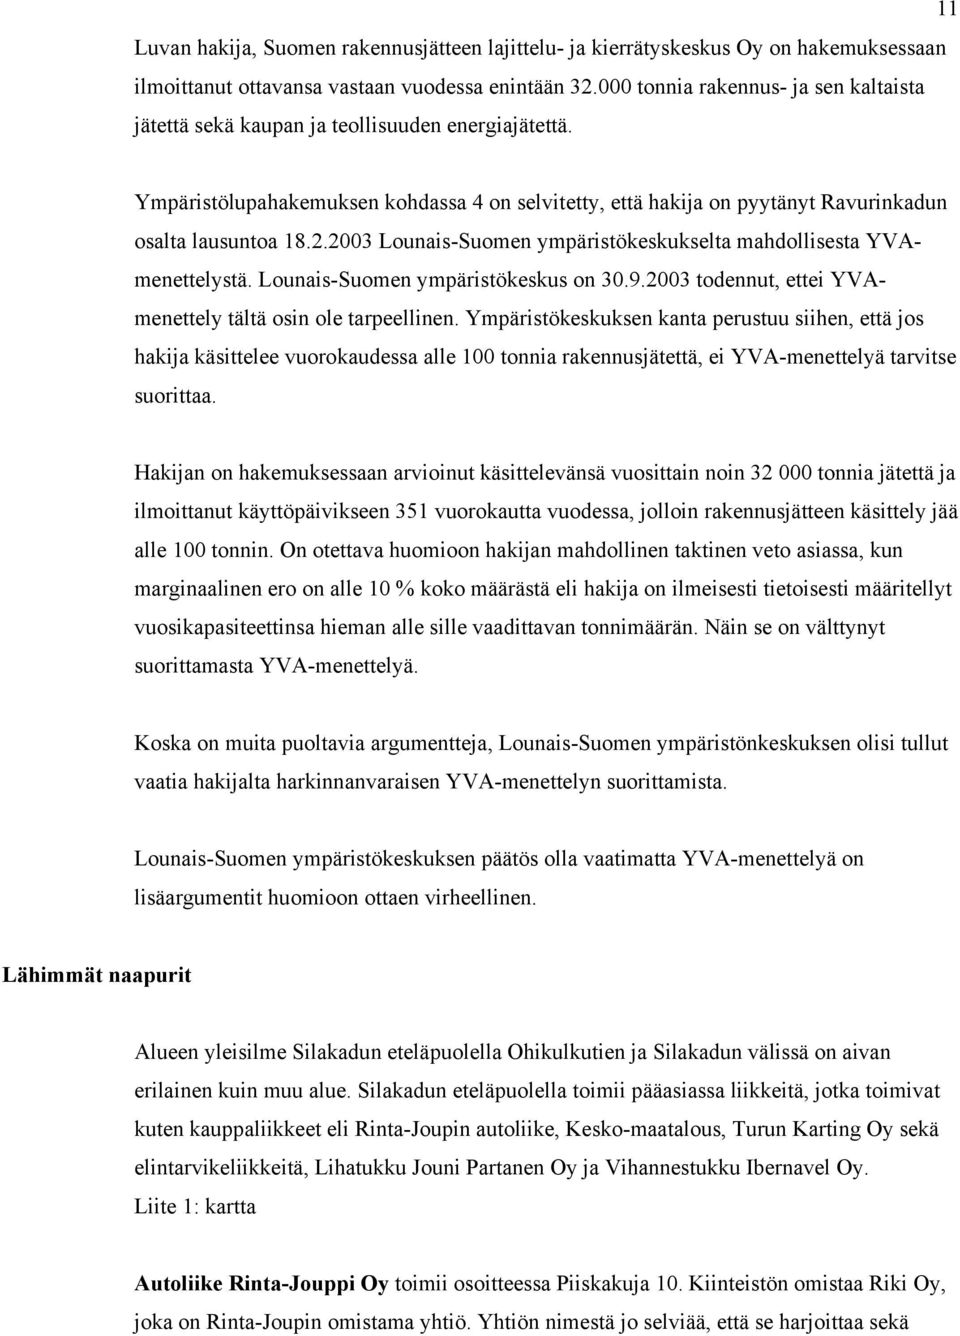 2003 Lounais-Suomen ympäristökeskukselta mahdollisesta YVAmenettelystä. Lounais-Suomen ympäristökeskus on 30.9.2003 todennut, ettei YVAmenettely tältä osin ole tarpeellinen.